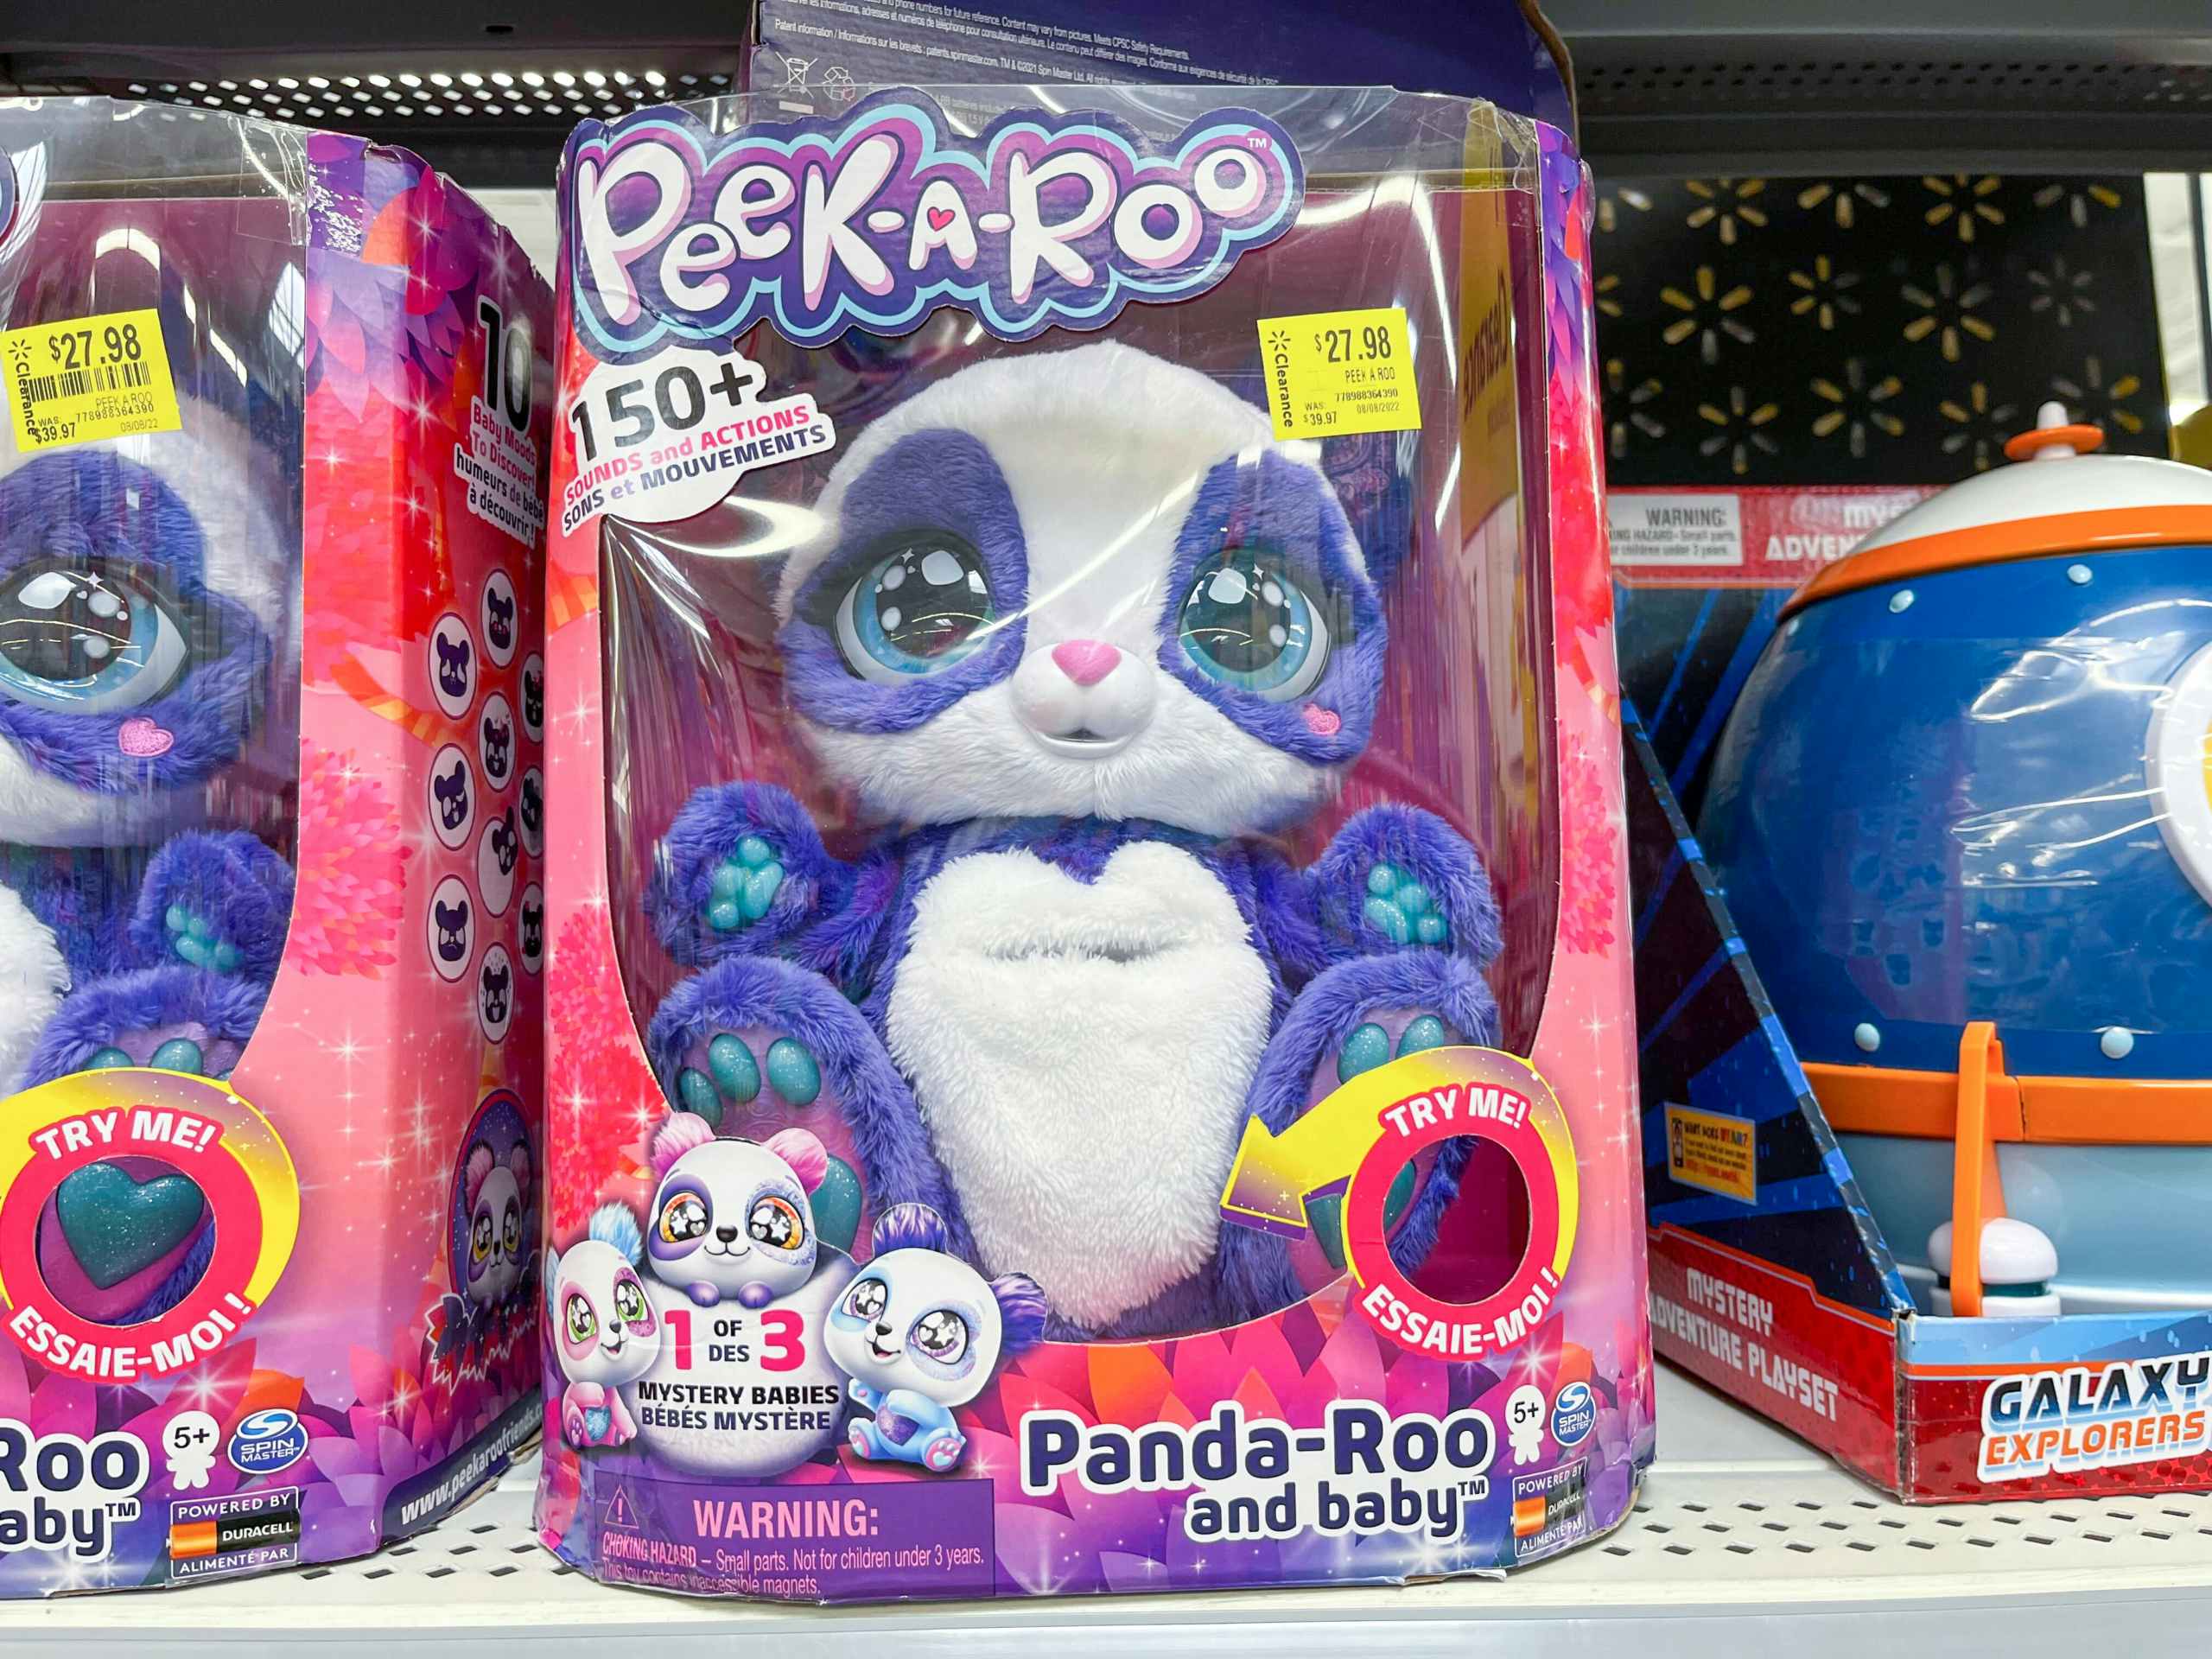 Peek-a-roo panda toy on shelf